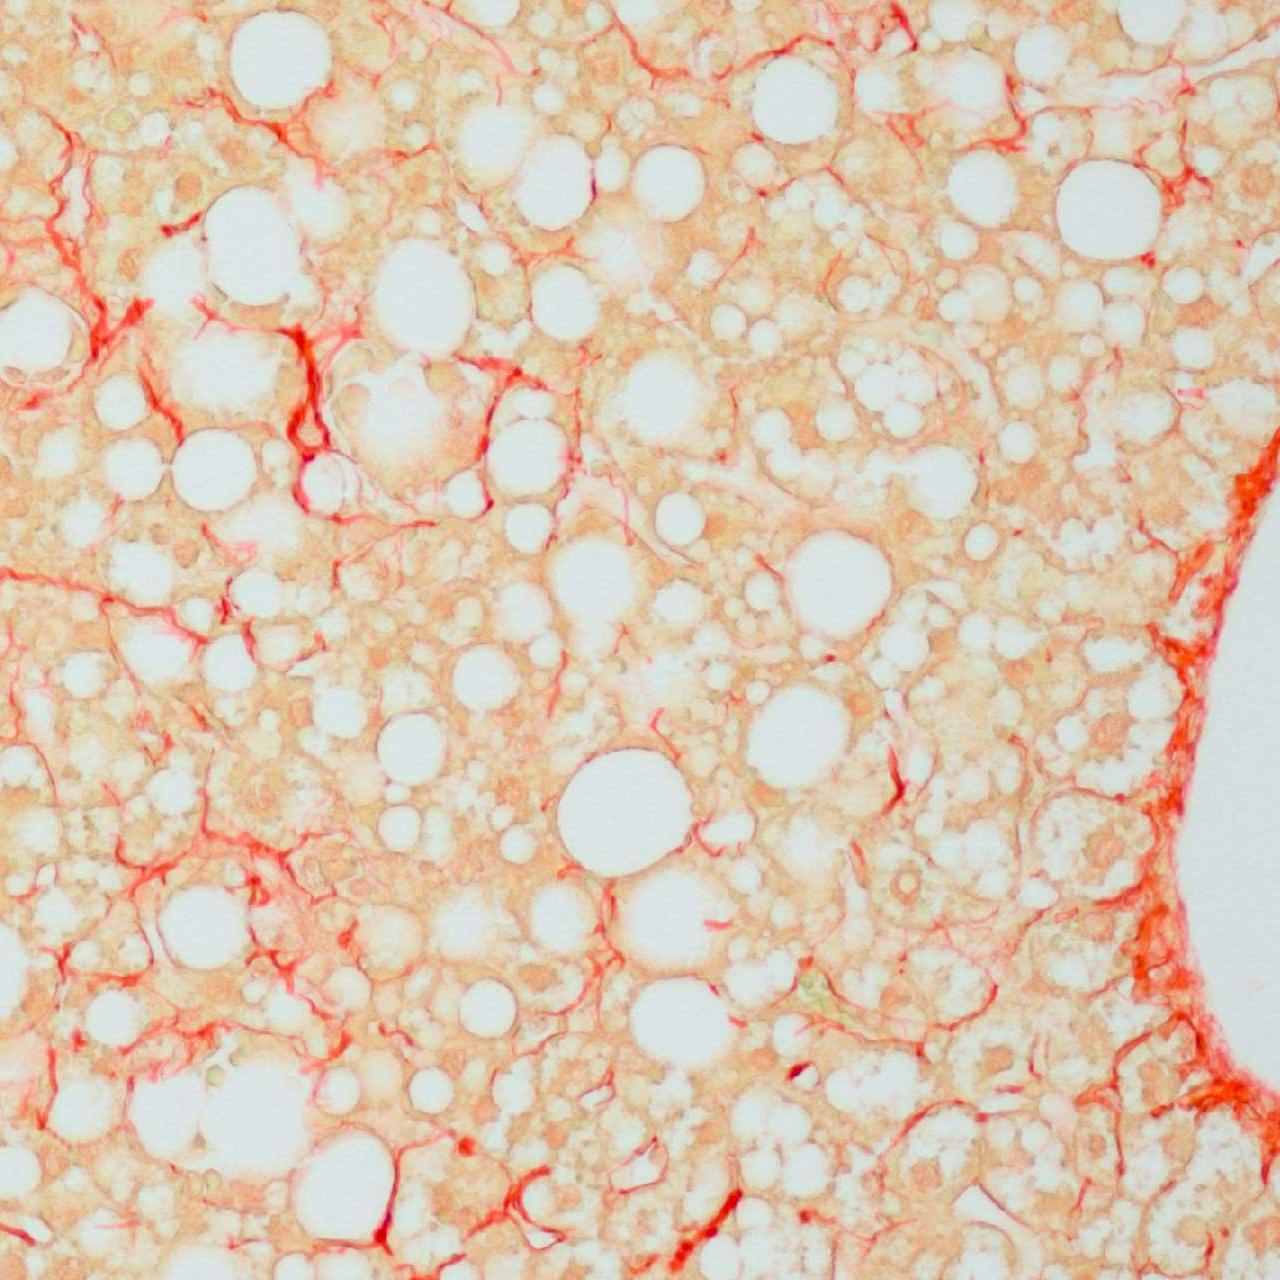 マウス肝臓と結合コラーゲン組織